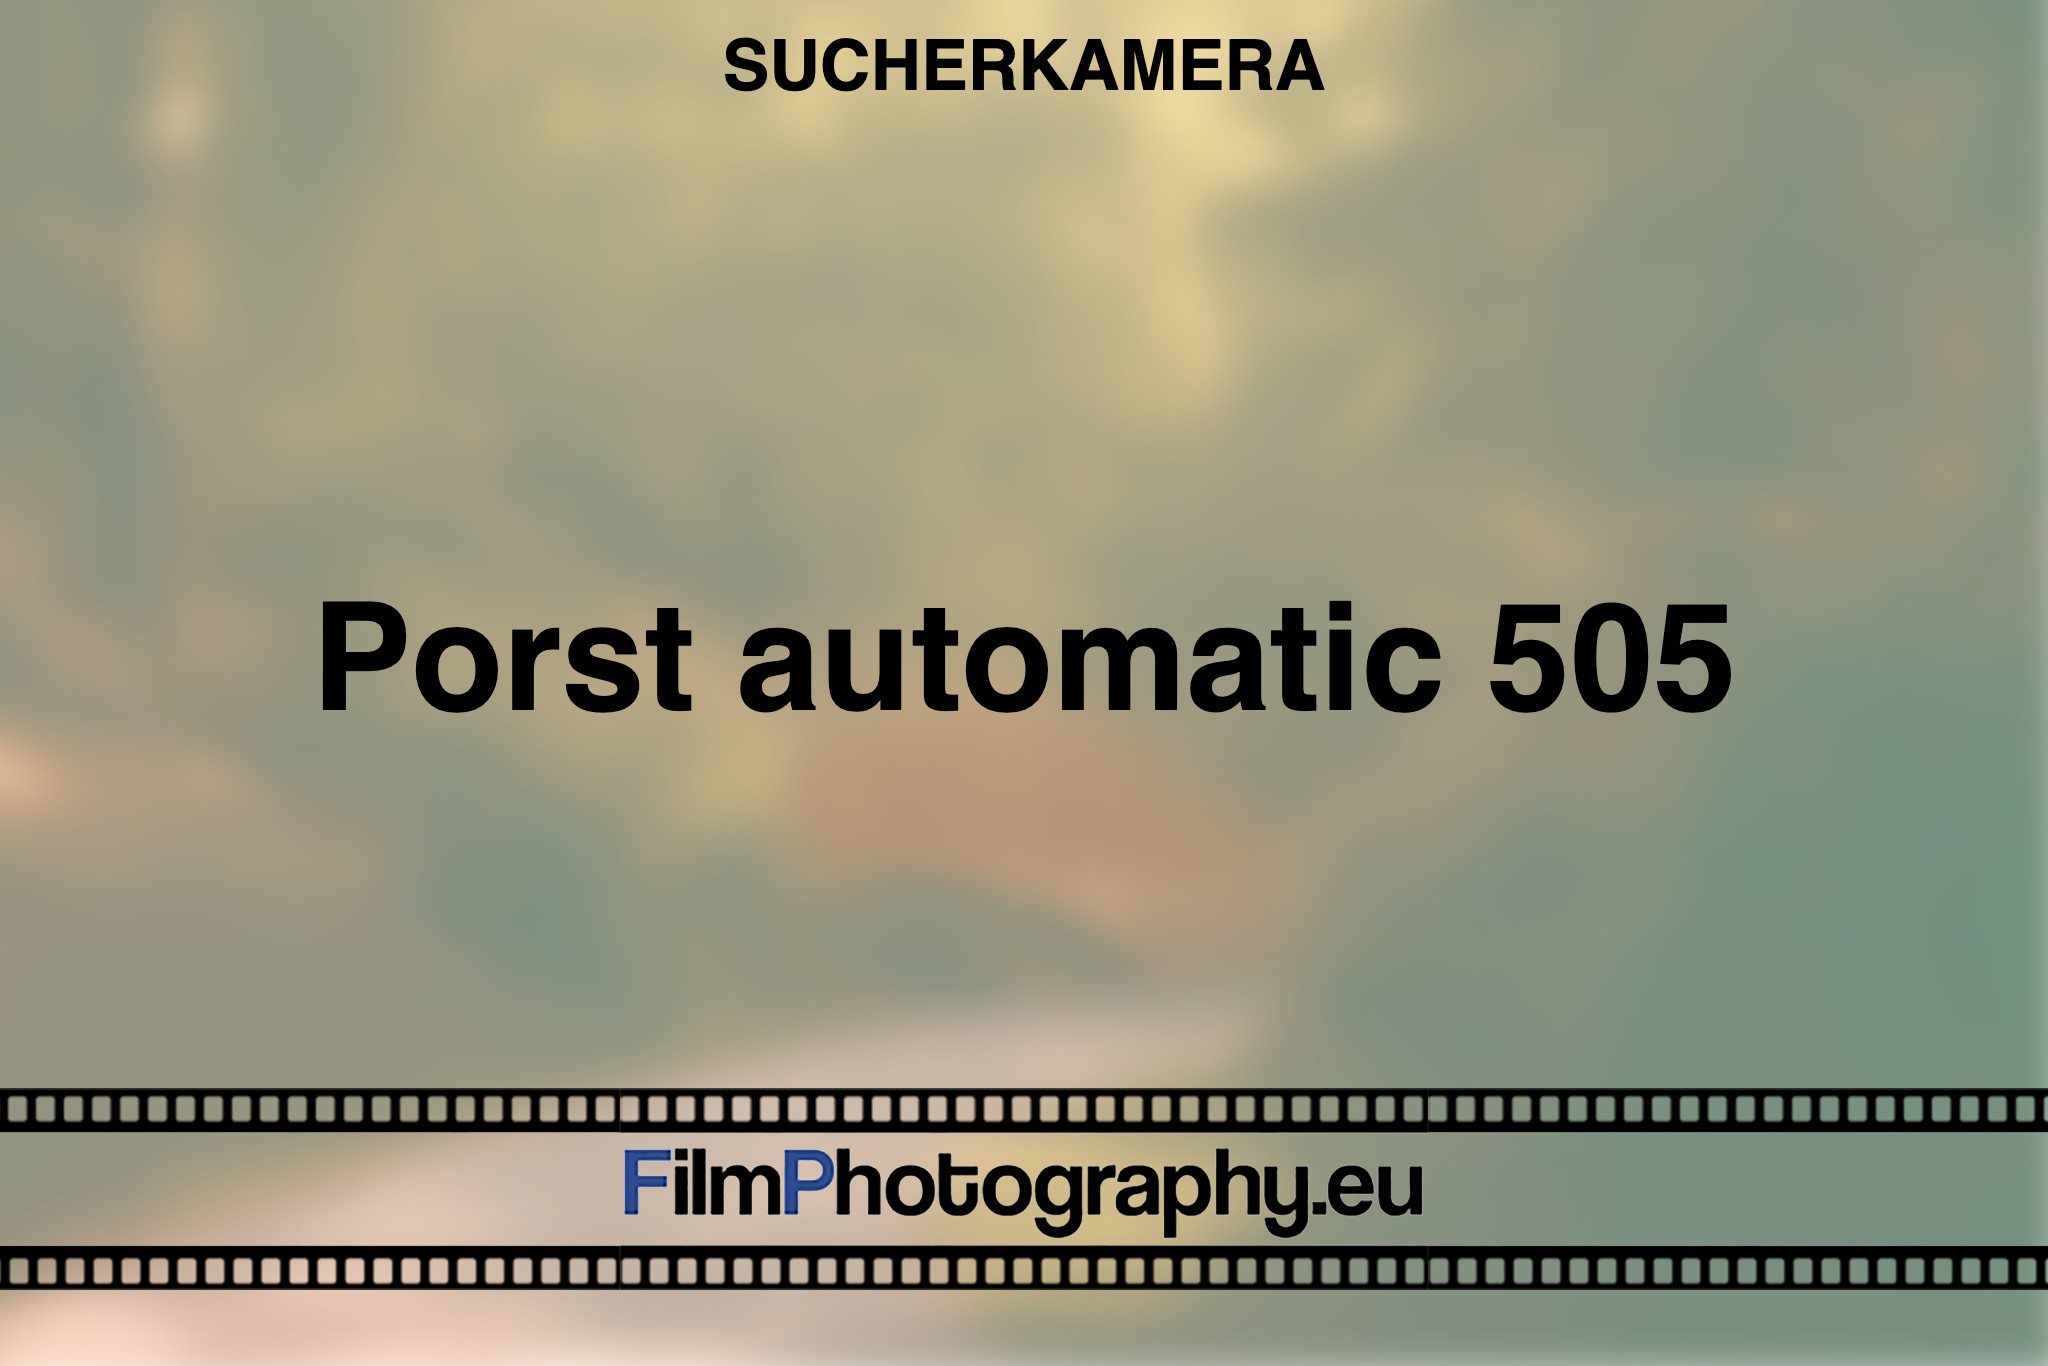 porst-automatic-505-sucherkamera-bnv